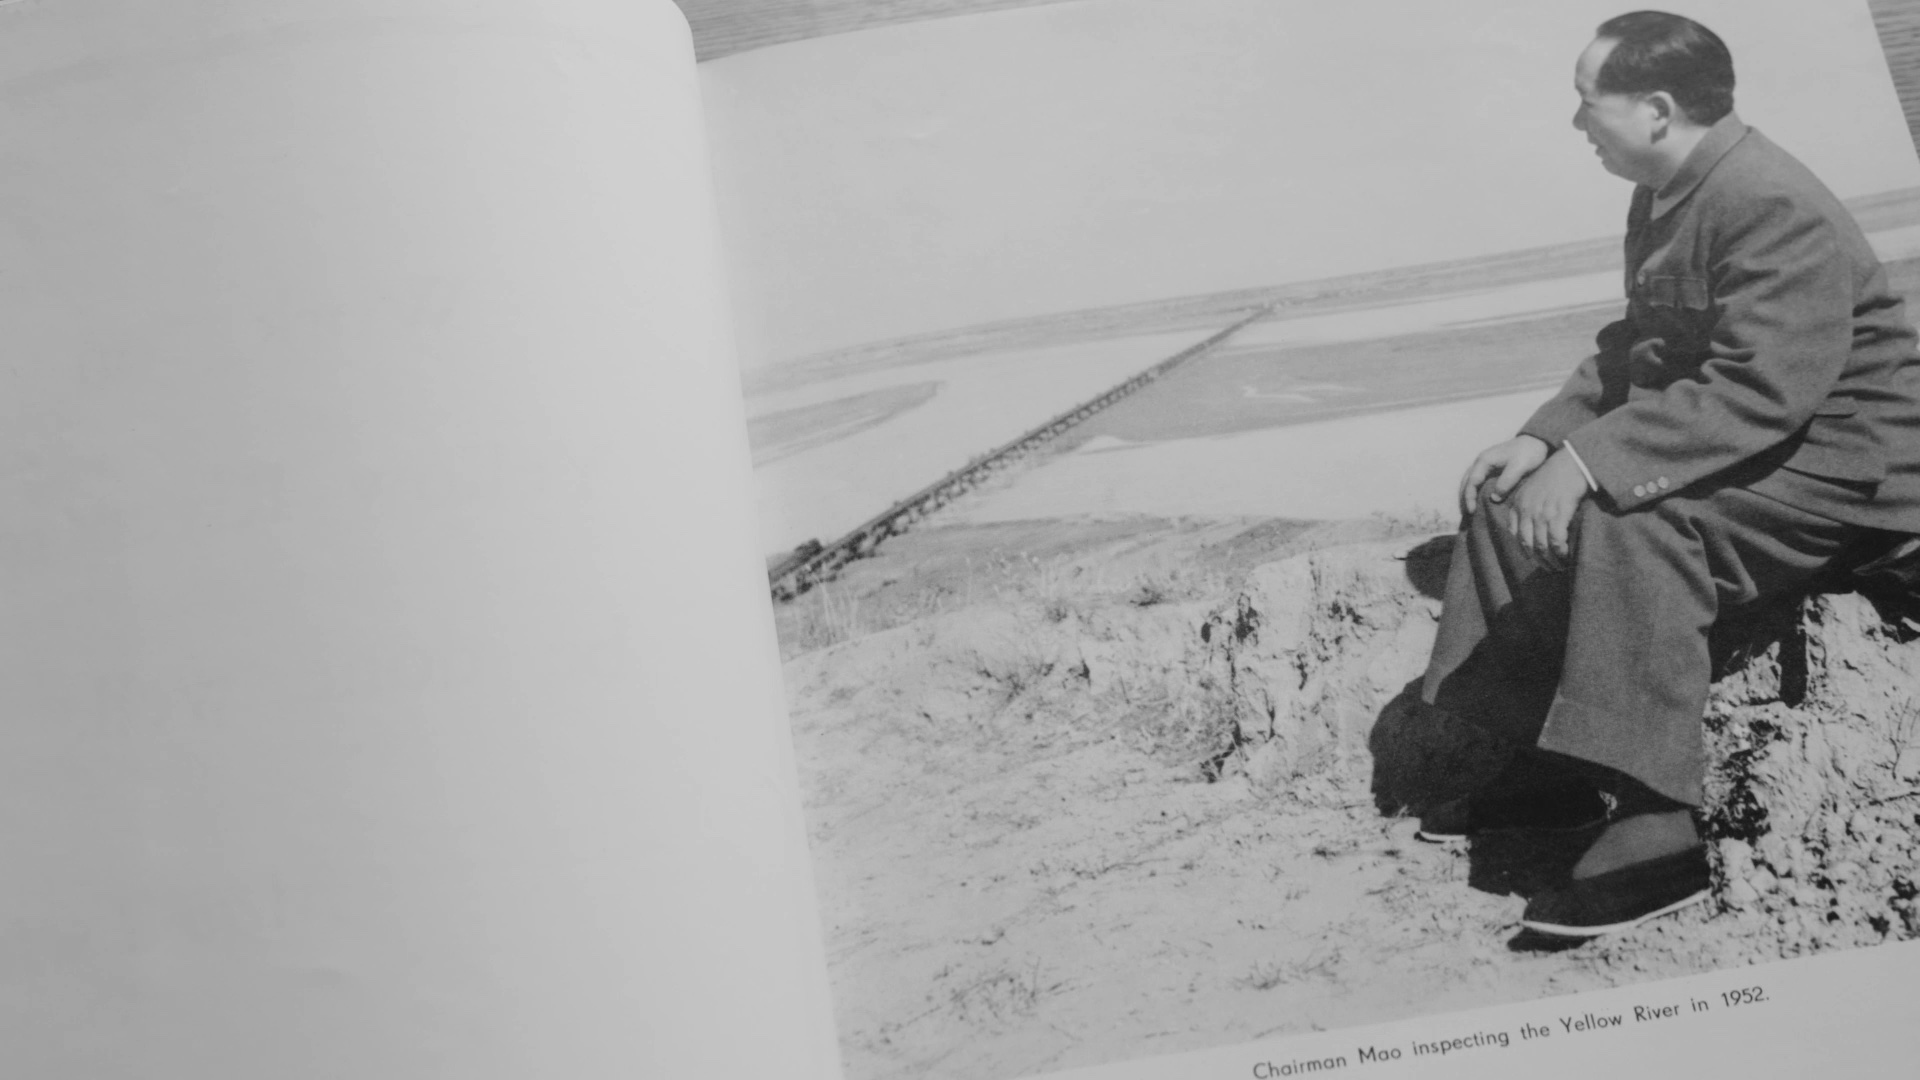 صورة بالأبيض والأسود للزعيم الصيني ماو تسي تونغ وهو جالس على شاطئ